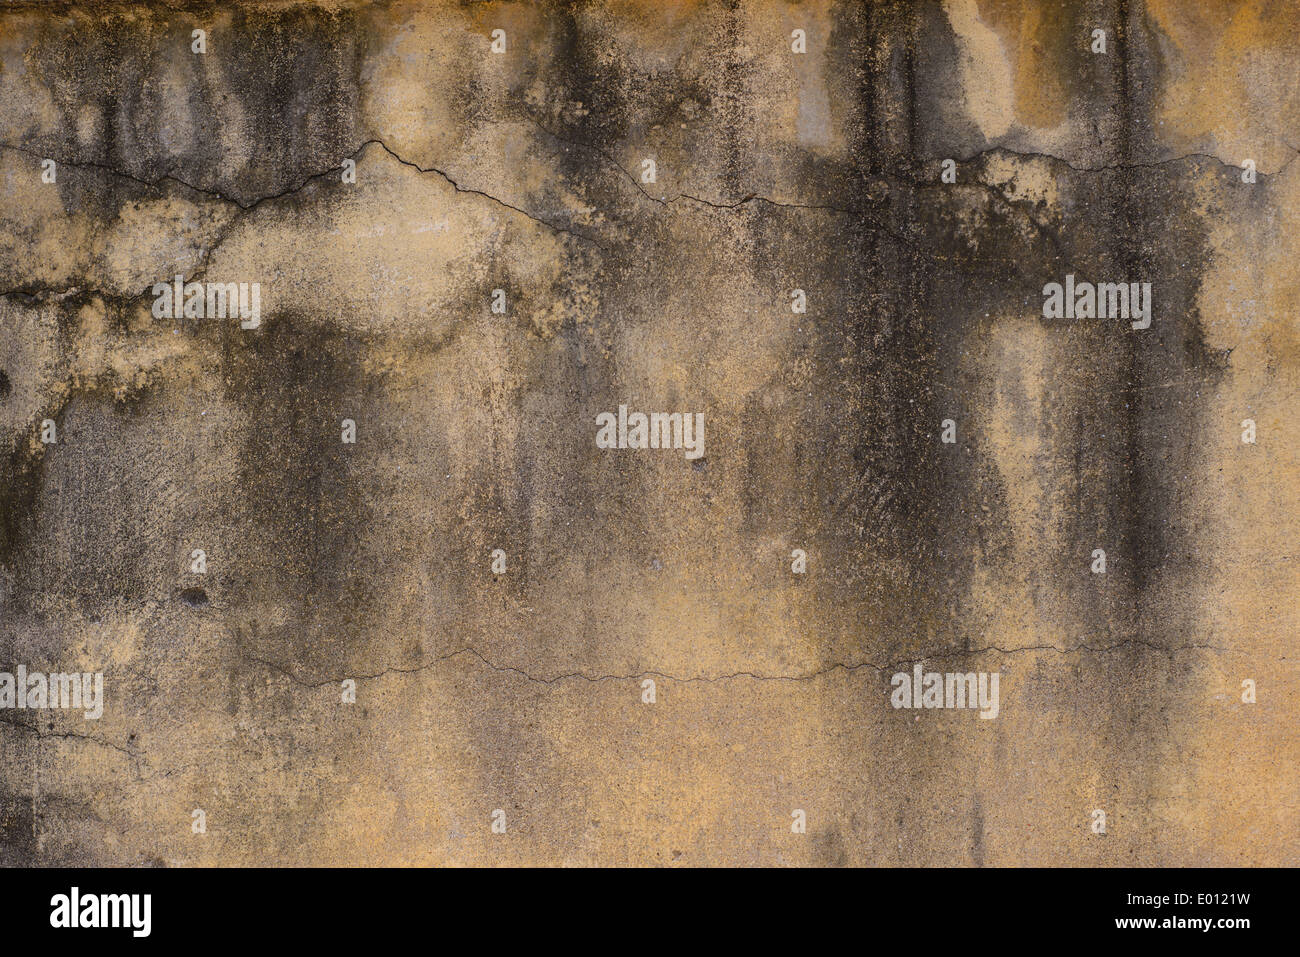 Persistente Schimmel an der Wand im Schrank und Regale. Heizung in der Nähe  der Ecke hängen Stockfotografie - Alamy